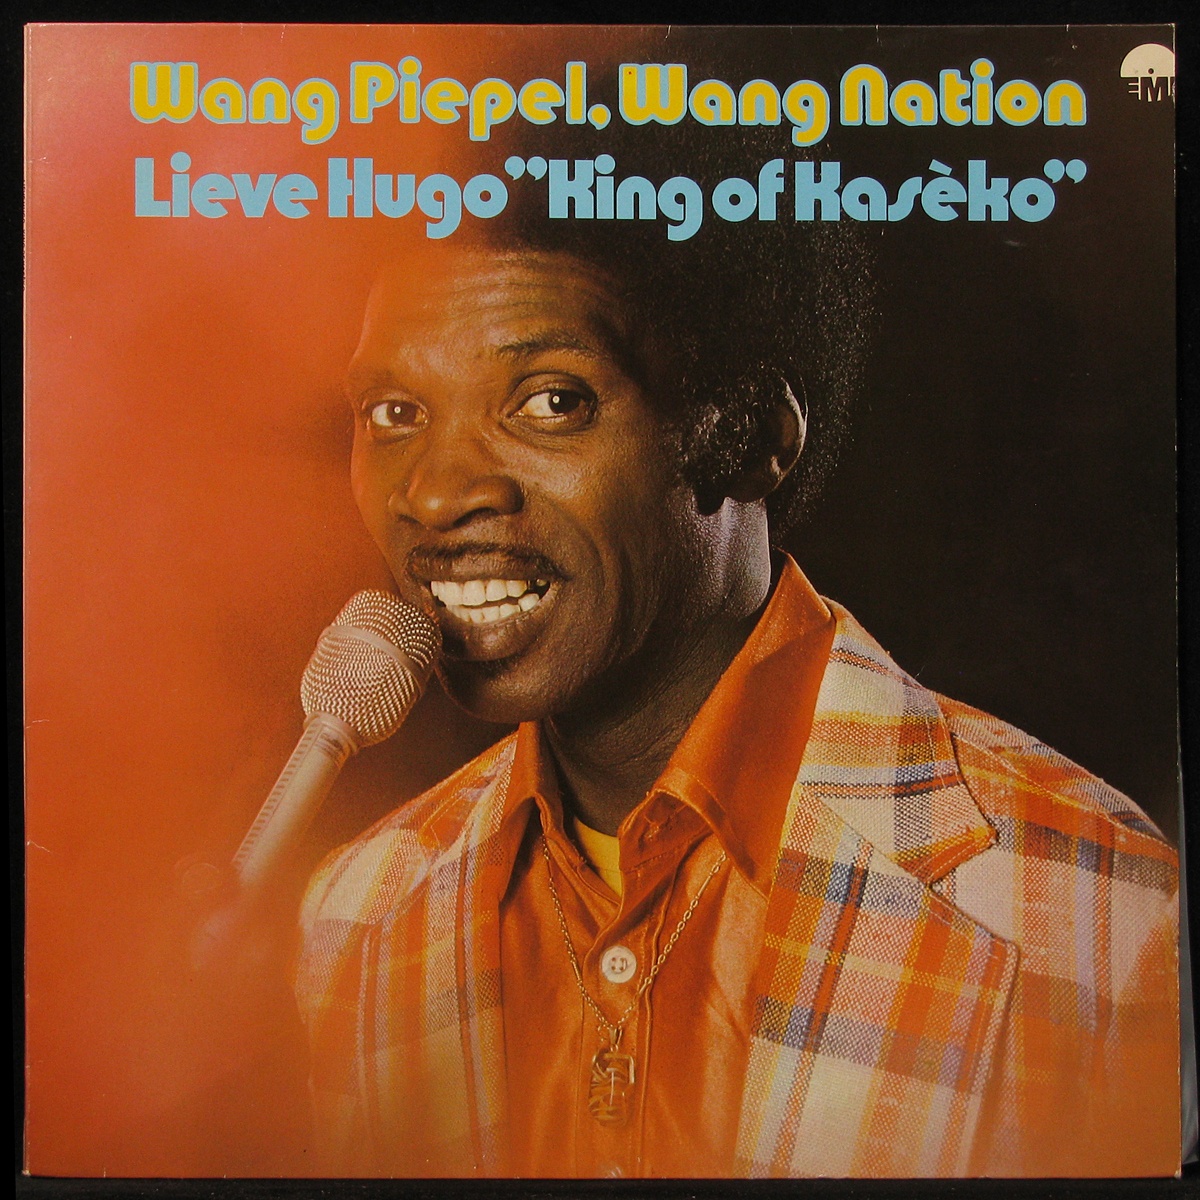 LP Lieve Hugo — Wang Piepel, Wang Nation фото